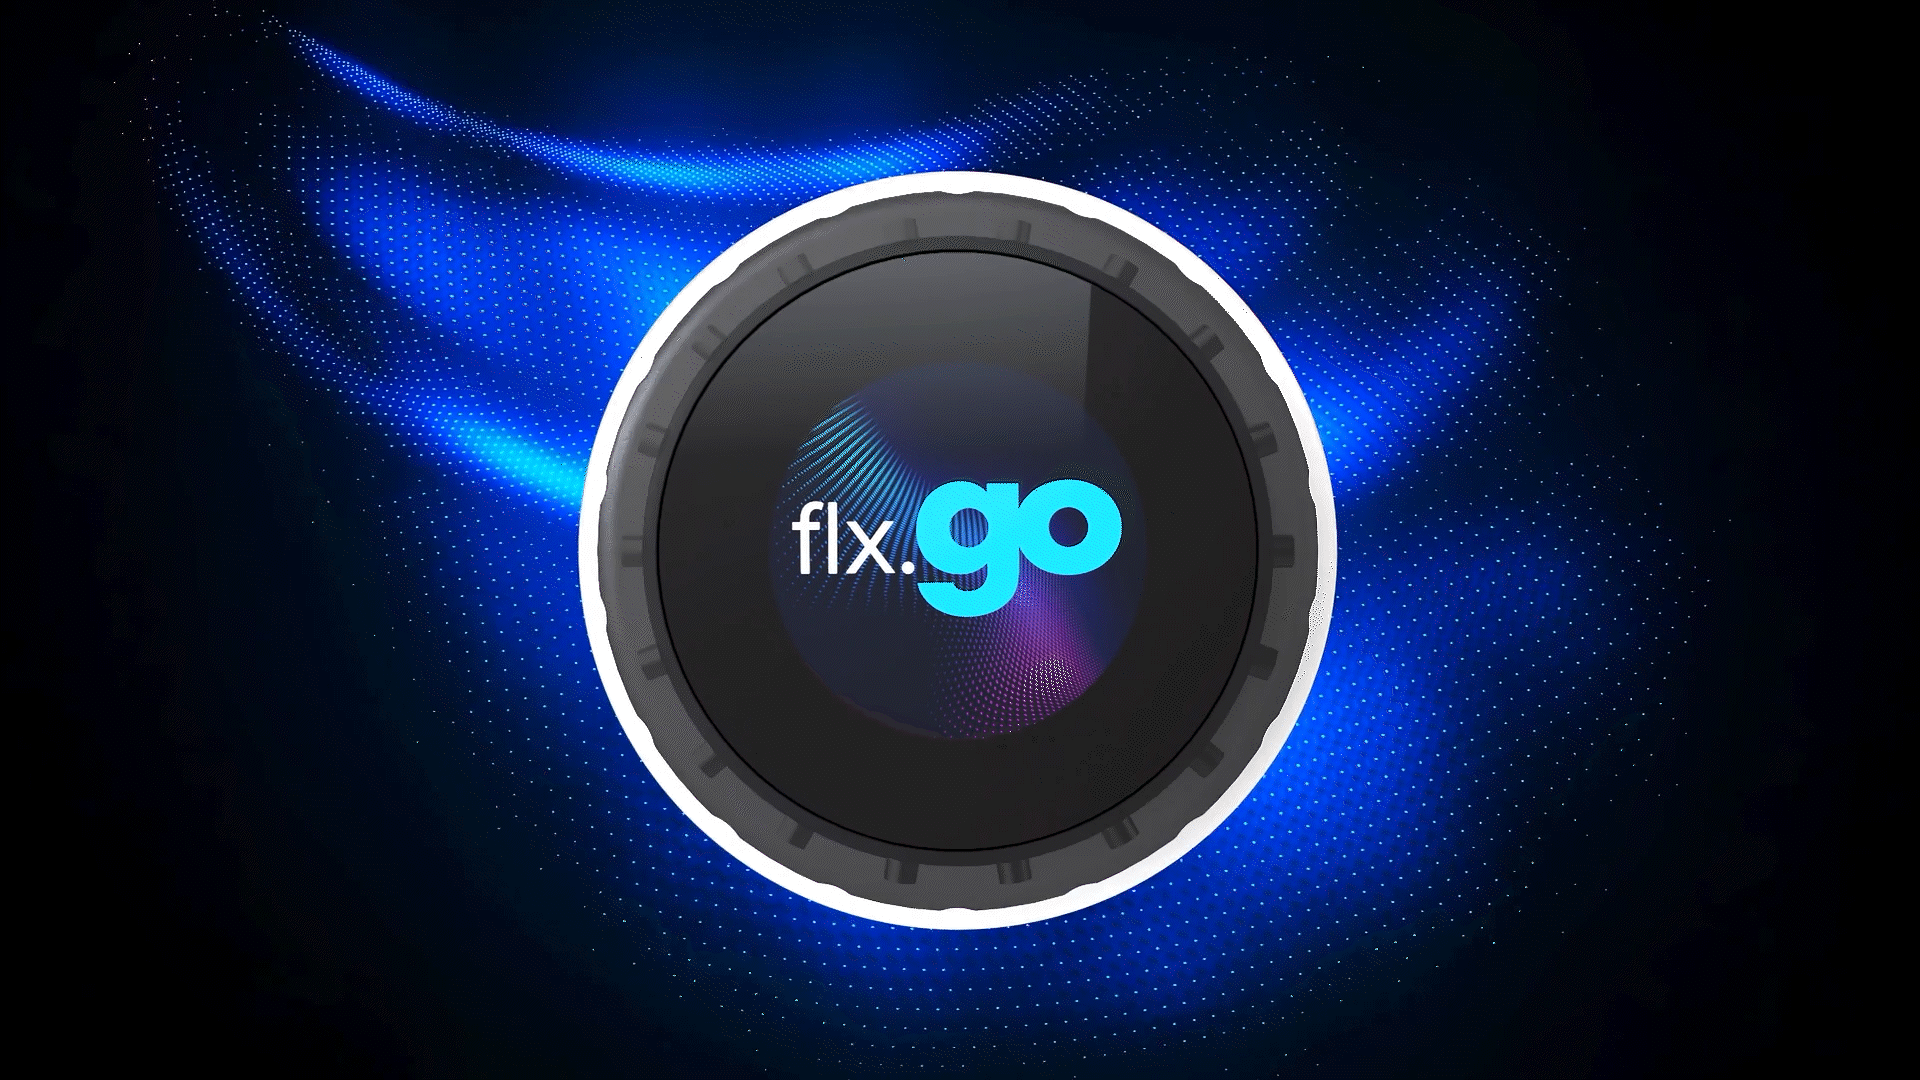 Flx.go - Spa controller